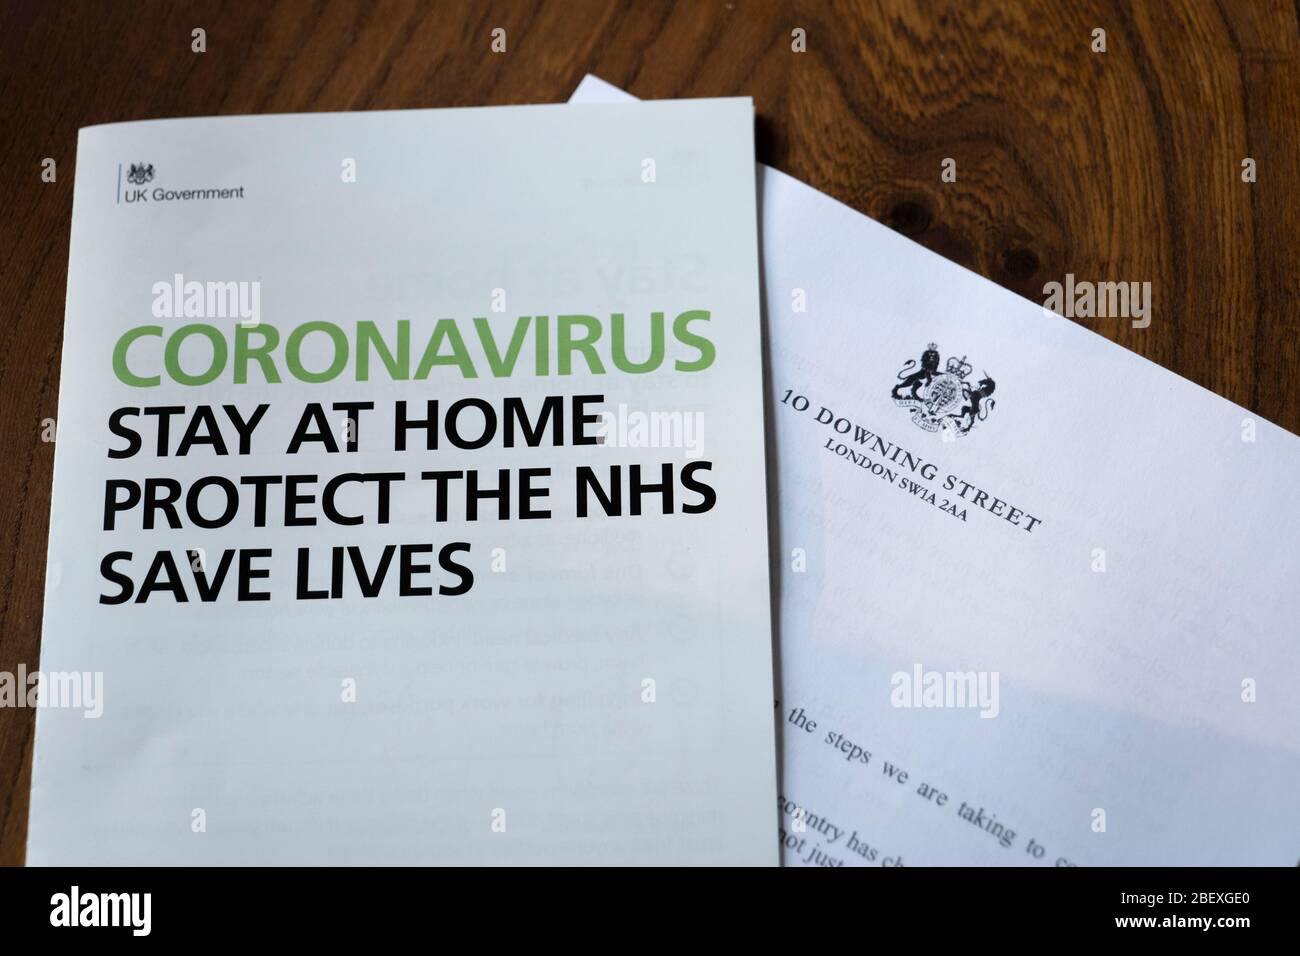 Coronavirus UK carta del gobierno que describe los detalles sobre "el almacenamiento en casa, proteger el NHS y salvar vidas" recibido el 11 de abril de 2020. Foto de stock